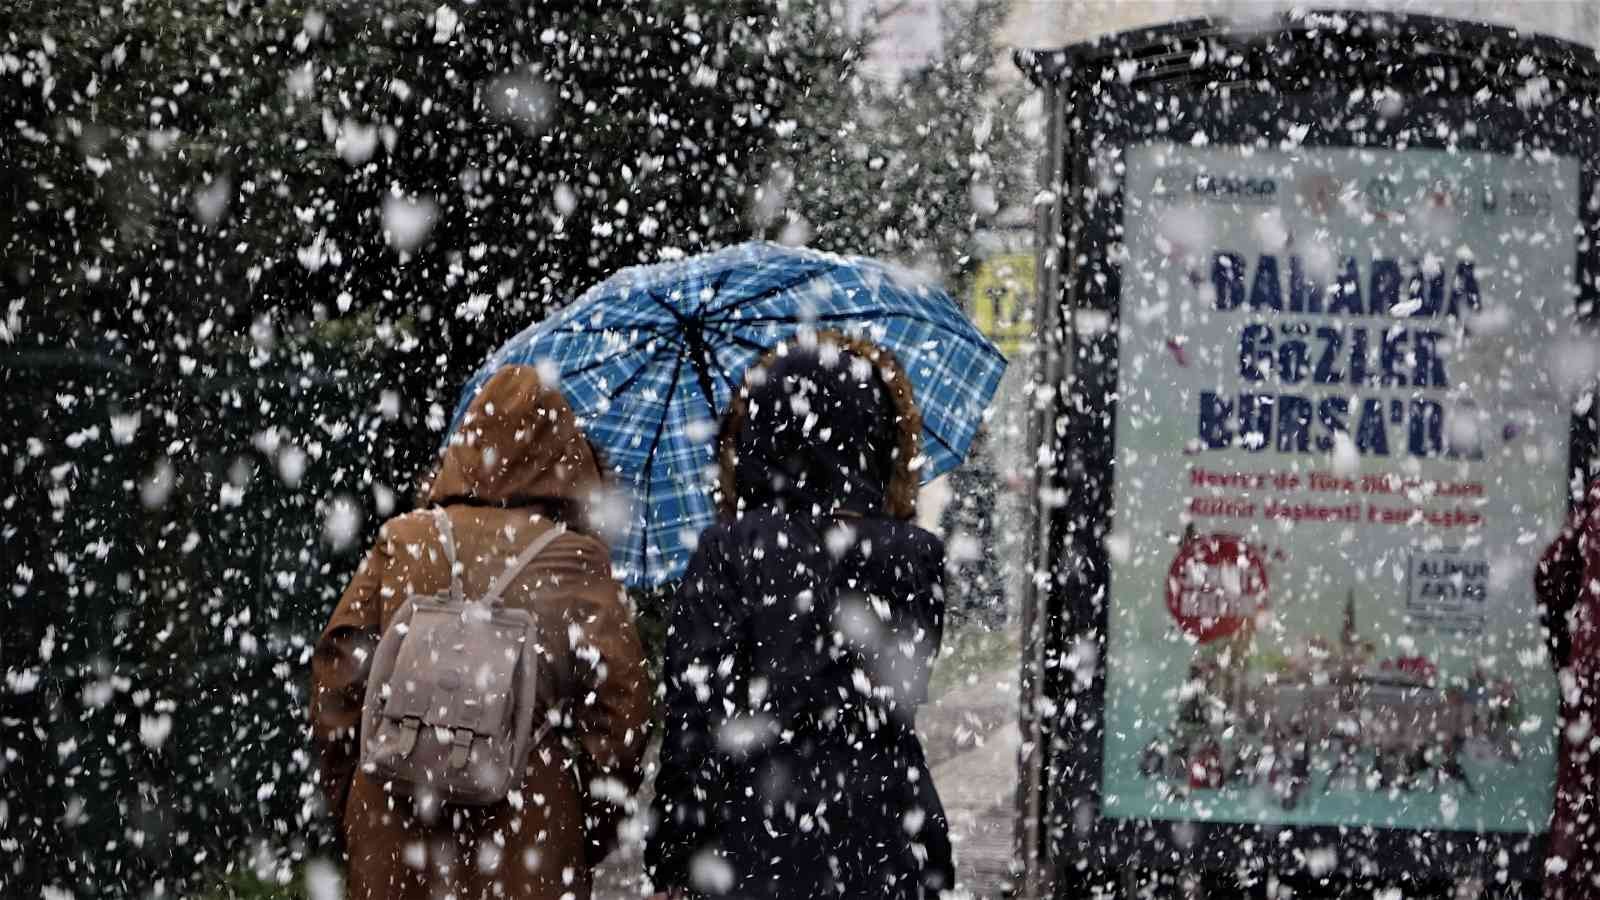 Bursa şehir merkezinde yoğun kar yağışı başladı. Uzmanların günler öncesinden uyarılarını yaptığı kar yağışı Bursa şehir merkezinde yoğun şekilde ...